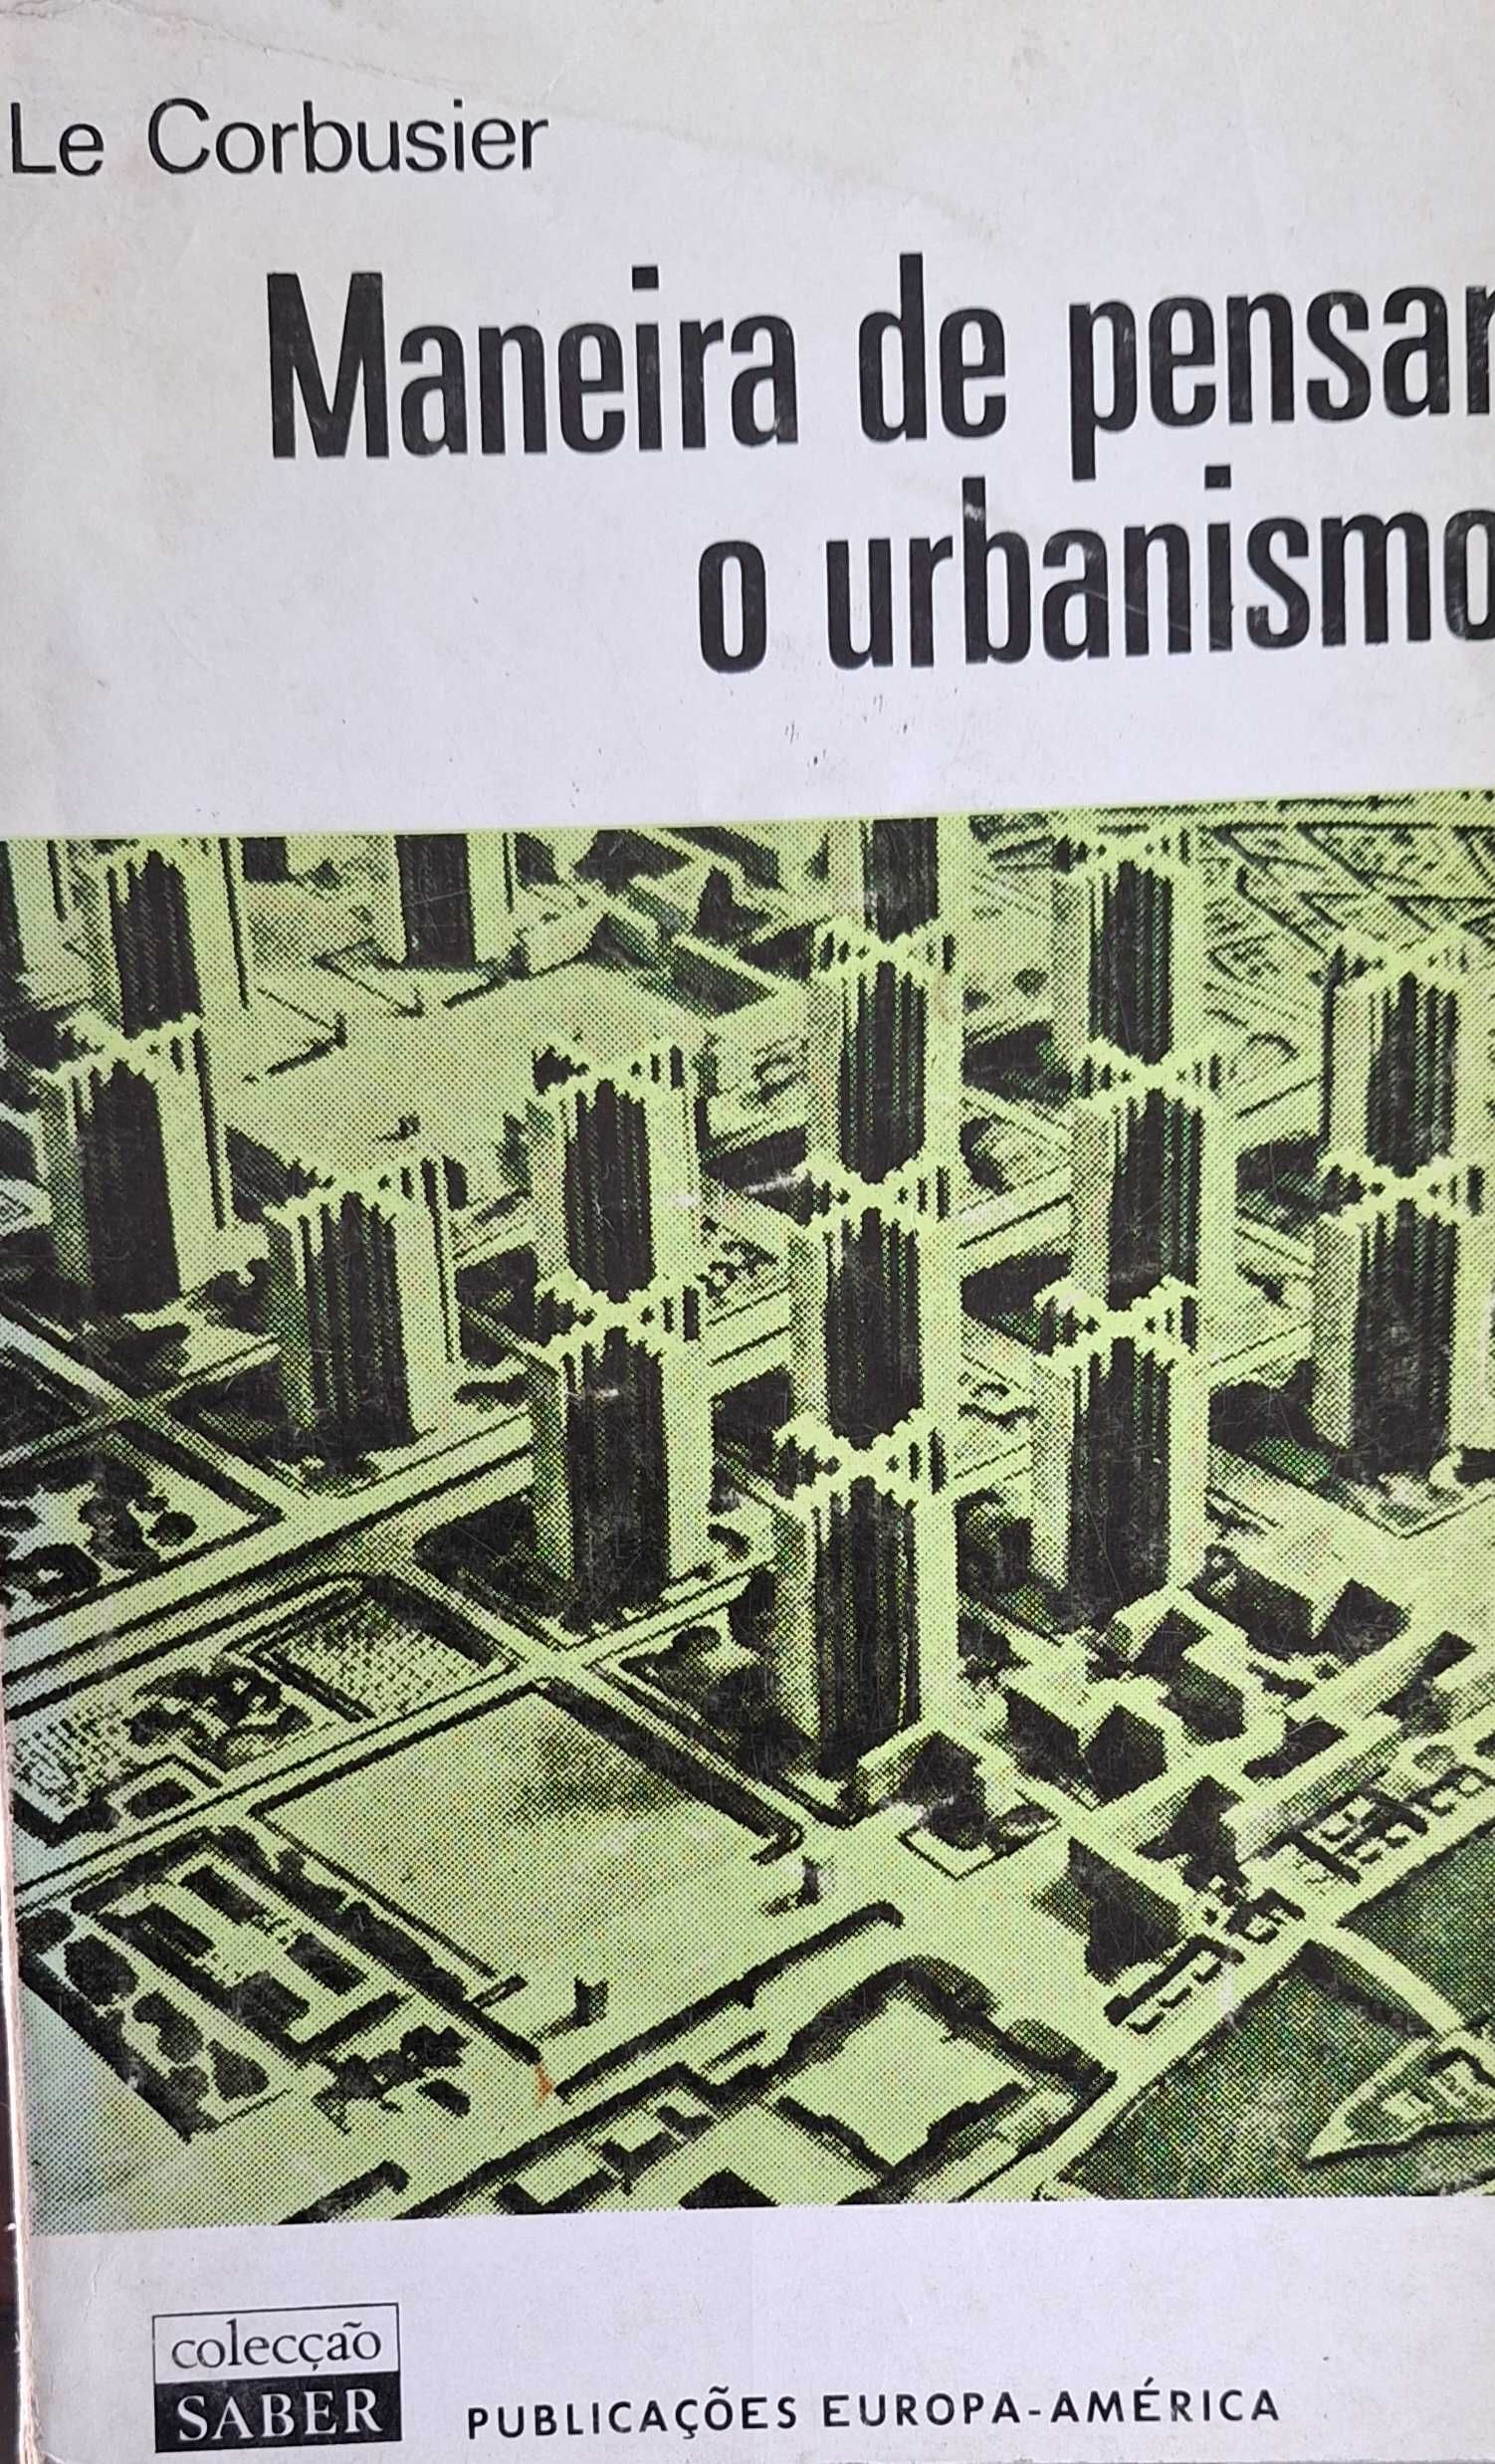 Arq. - A Maneira de Pensar o Urbanismo - Le Corbusier de 1975